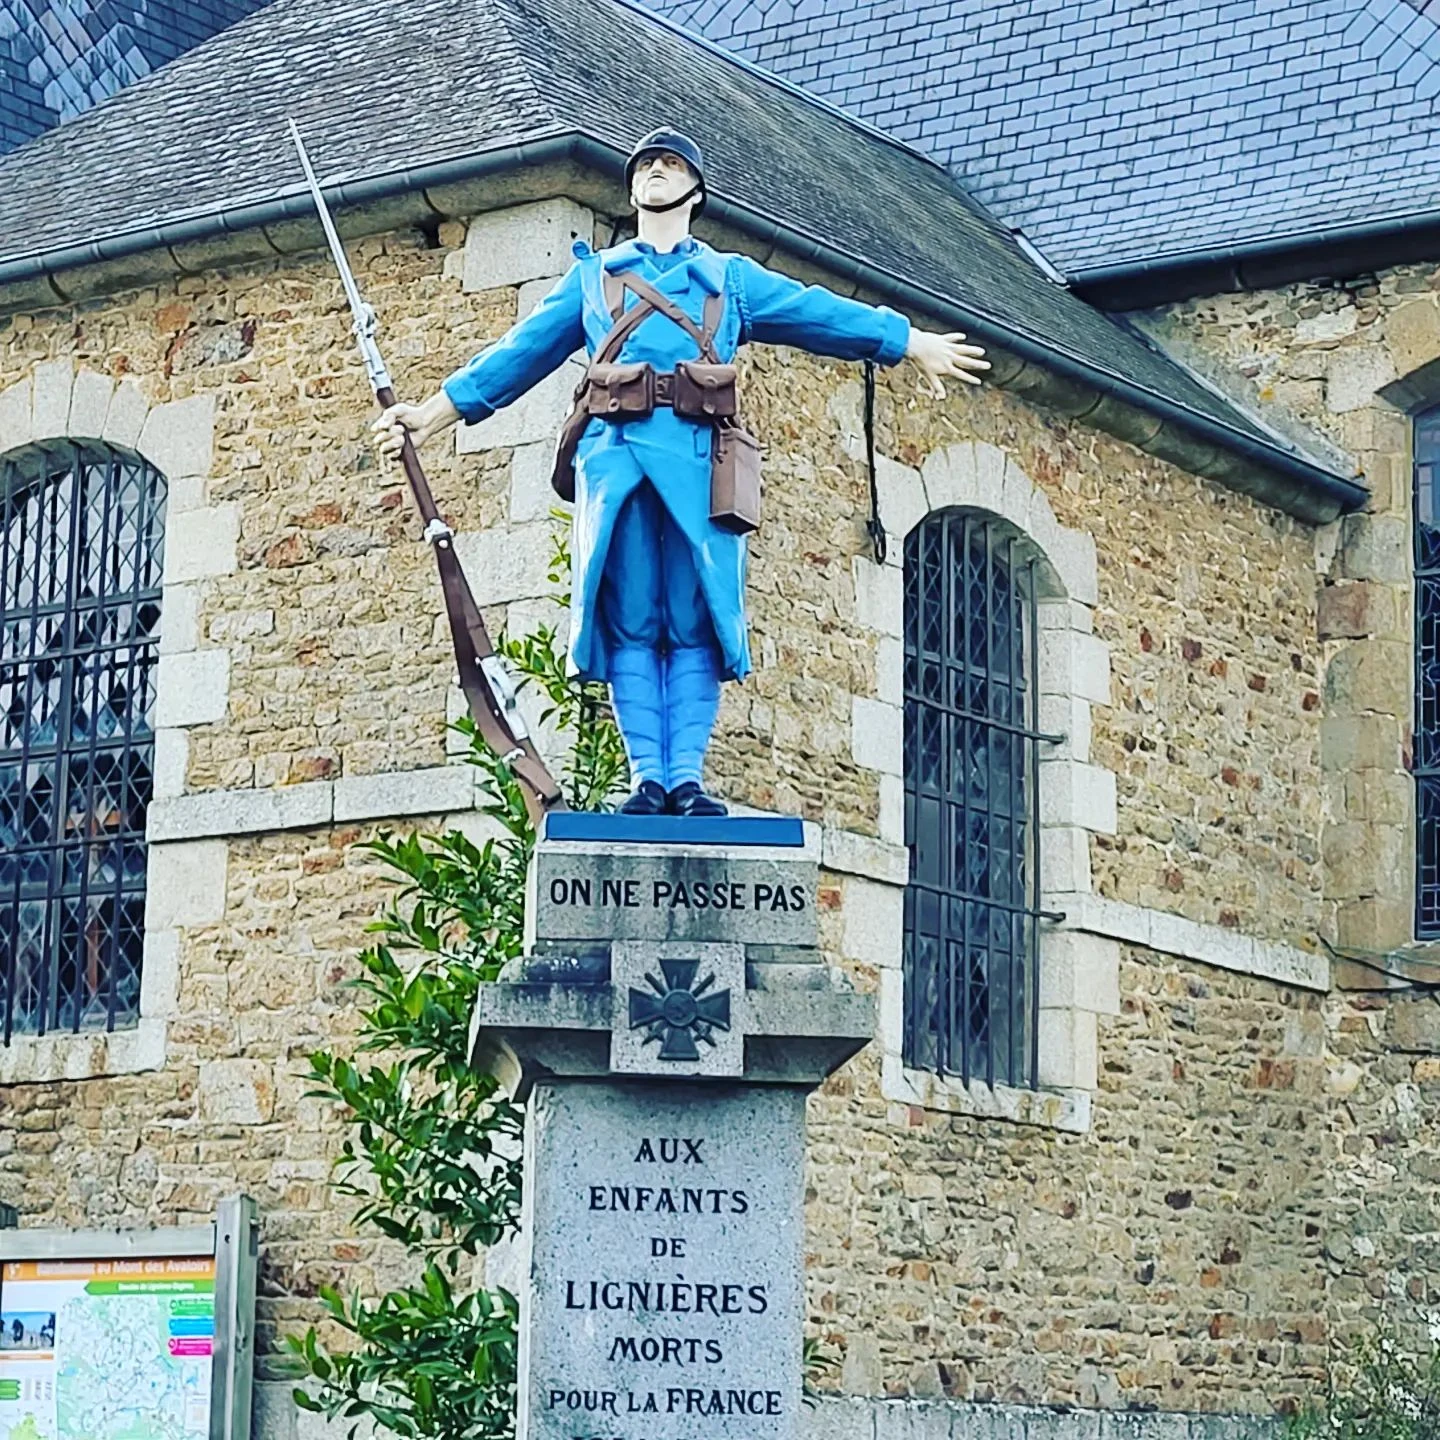 Le monument aux morts de Lignières Orgères en Mayenne. Photo choisie par monsieurdefrance.com : Jérôme Prod'homme (c)